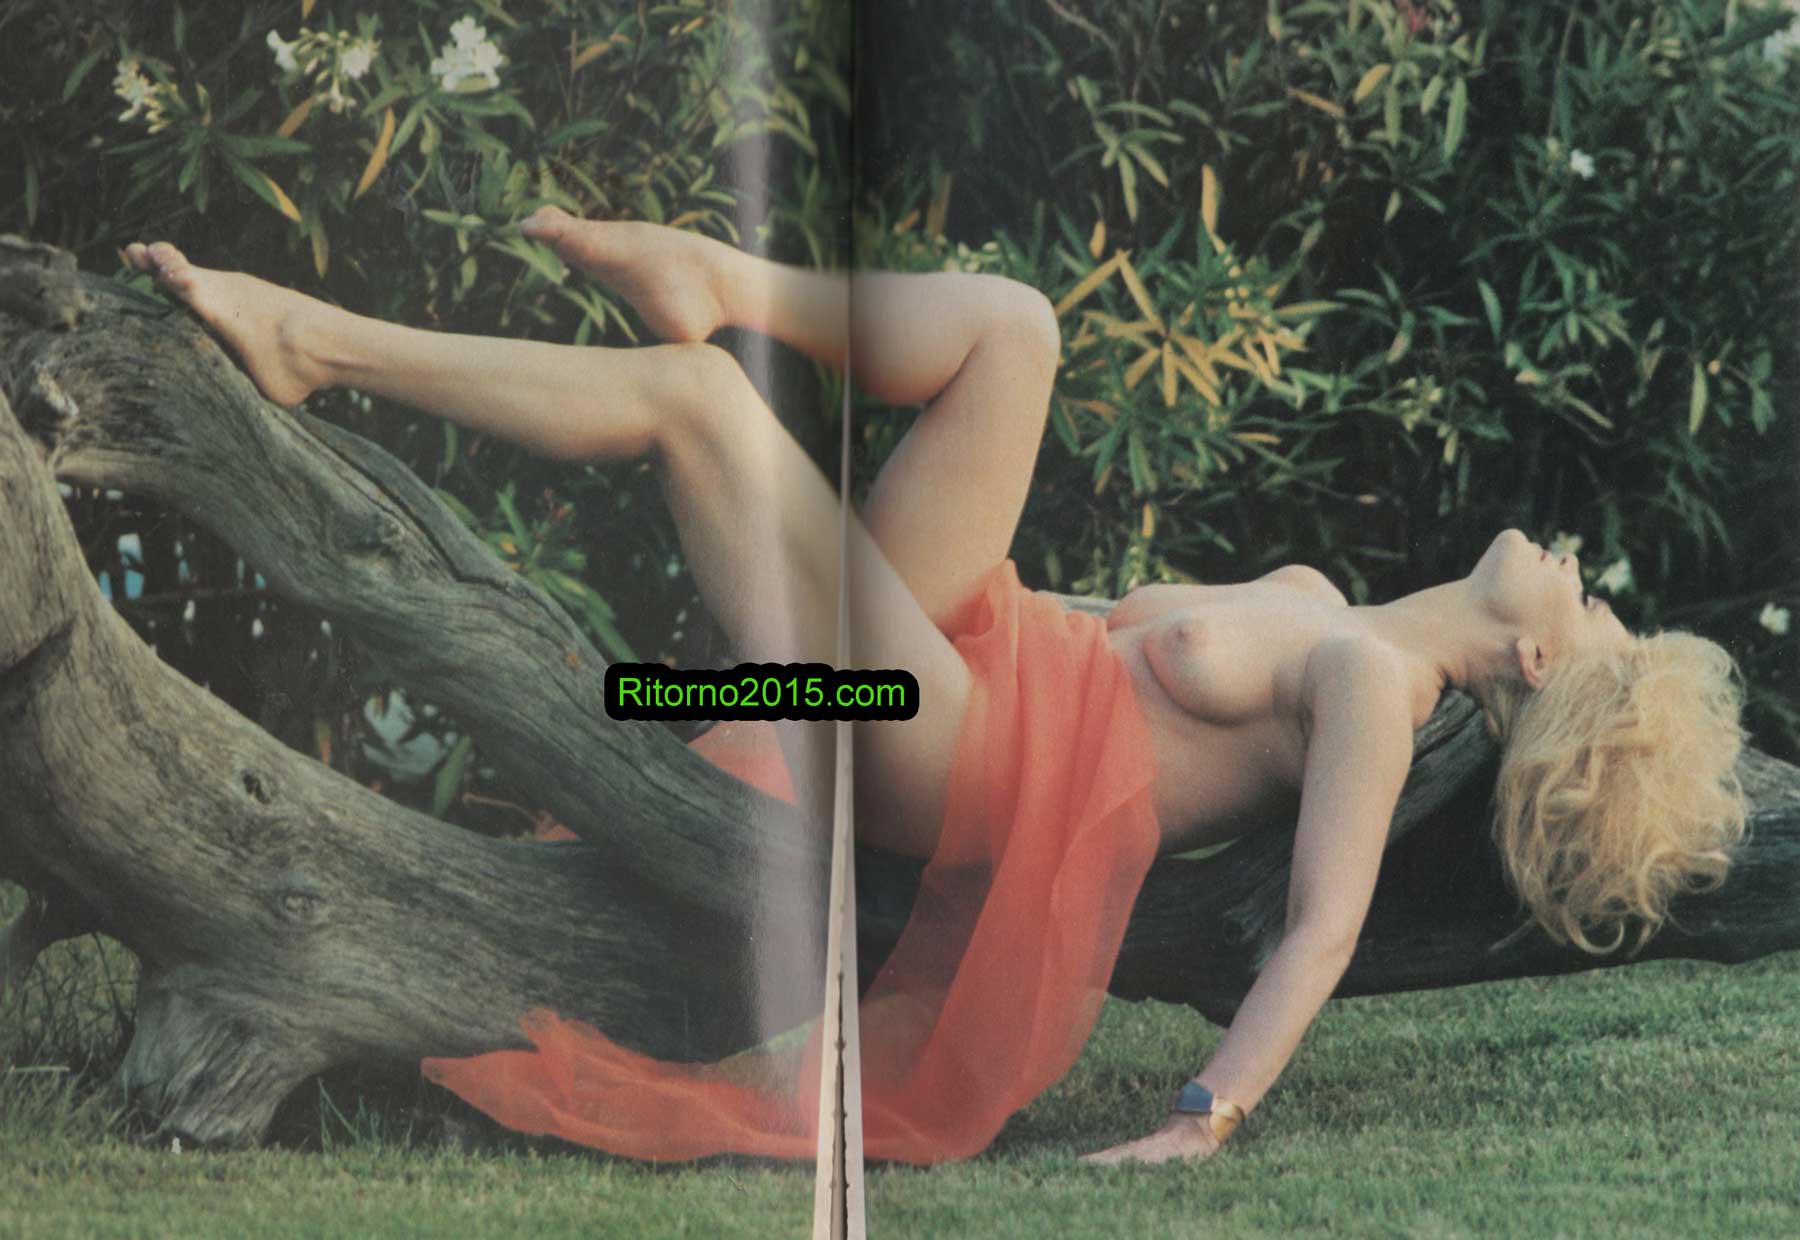 Μαρία Ιωαννίδου: Ολόγυμνη στο Playboy.